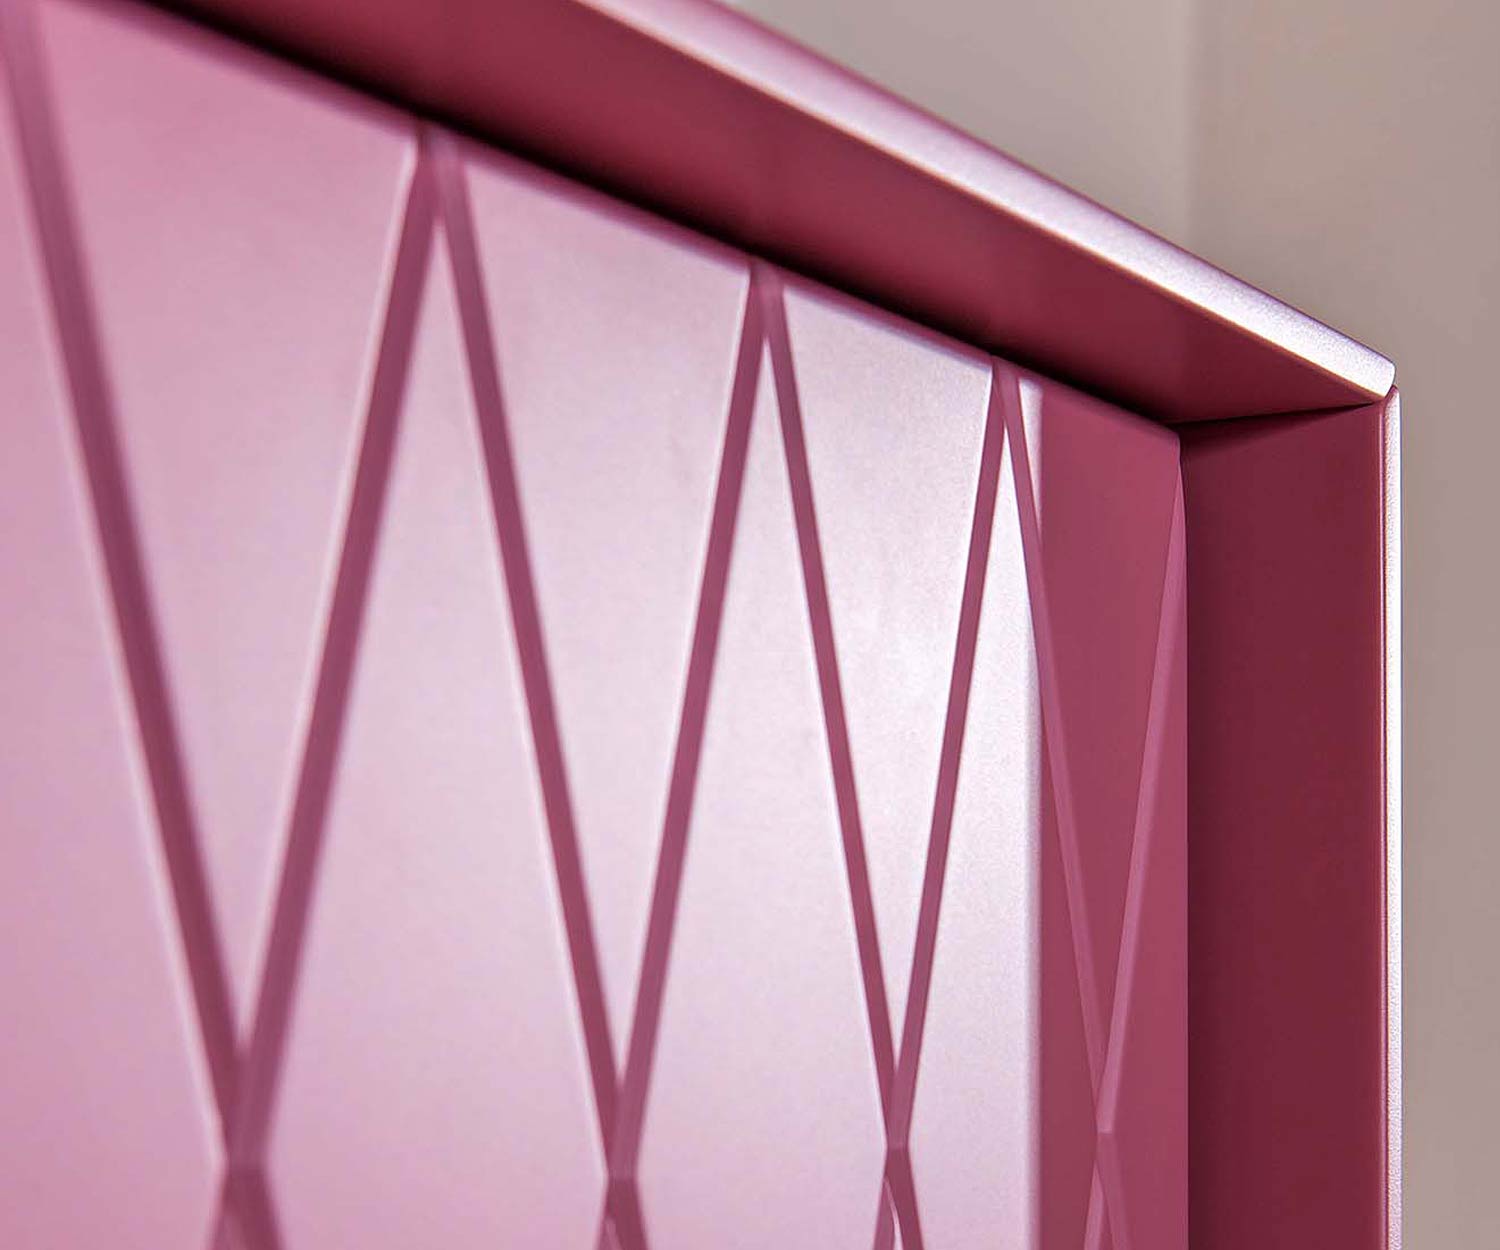 Hoge kwaliteit al2 Design Highboard e klipse 009 Roze Details ruitpatroon